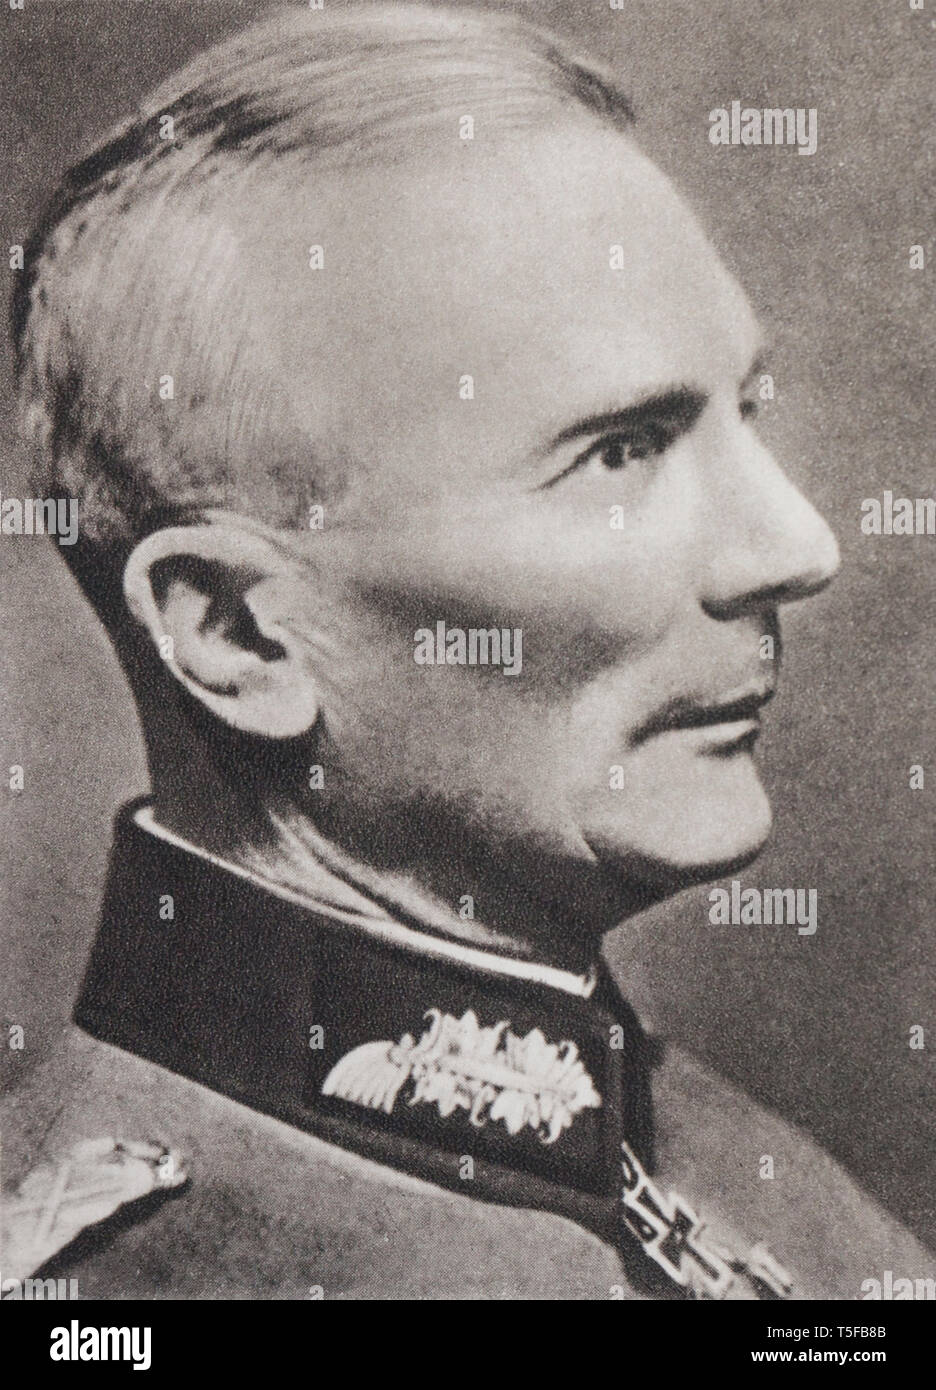 Ritratto del maresciallo di campo von Bock (1880-1945), comandante dell'esercito tedesco sulla parte centrale anteriore (Est anteriore). Foto Stock